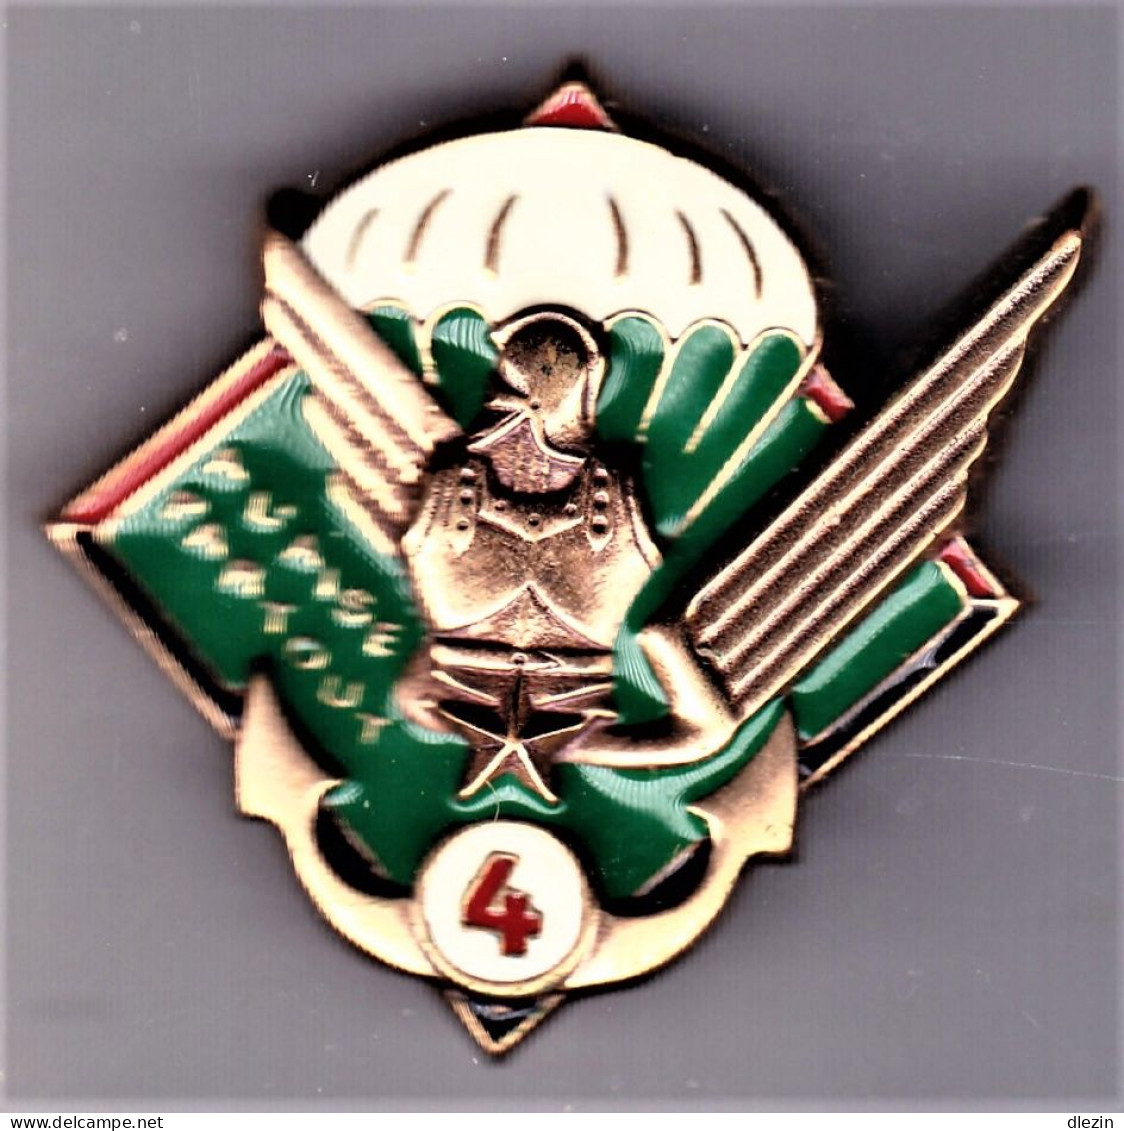 17° RGP/ 4° Cie. 17° Régiment Du Génie Parachutiste/ 4° Compagnie. SM.Leblond. - Heer